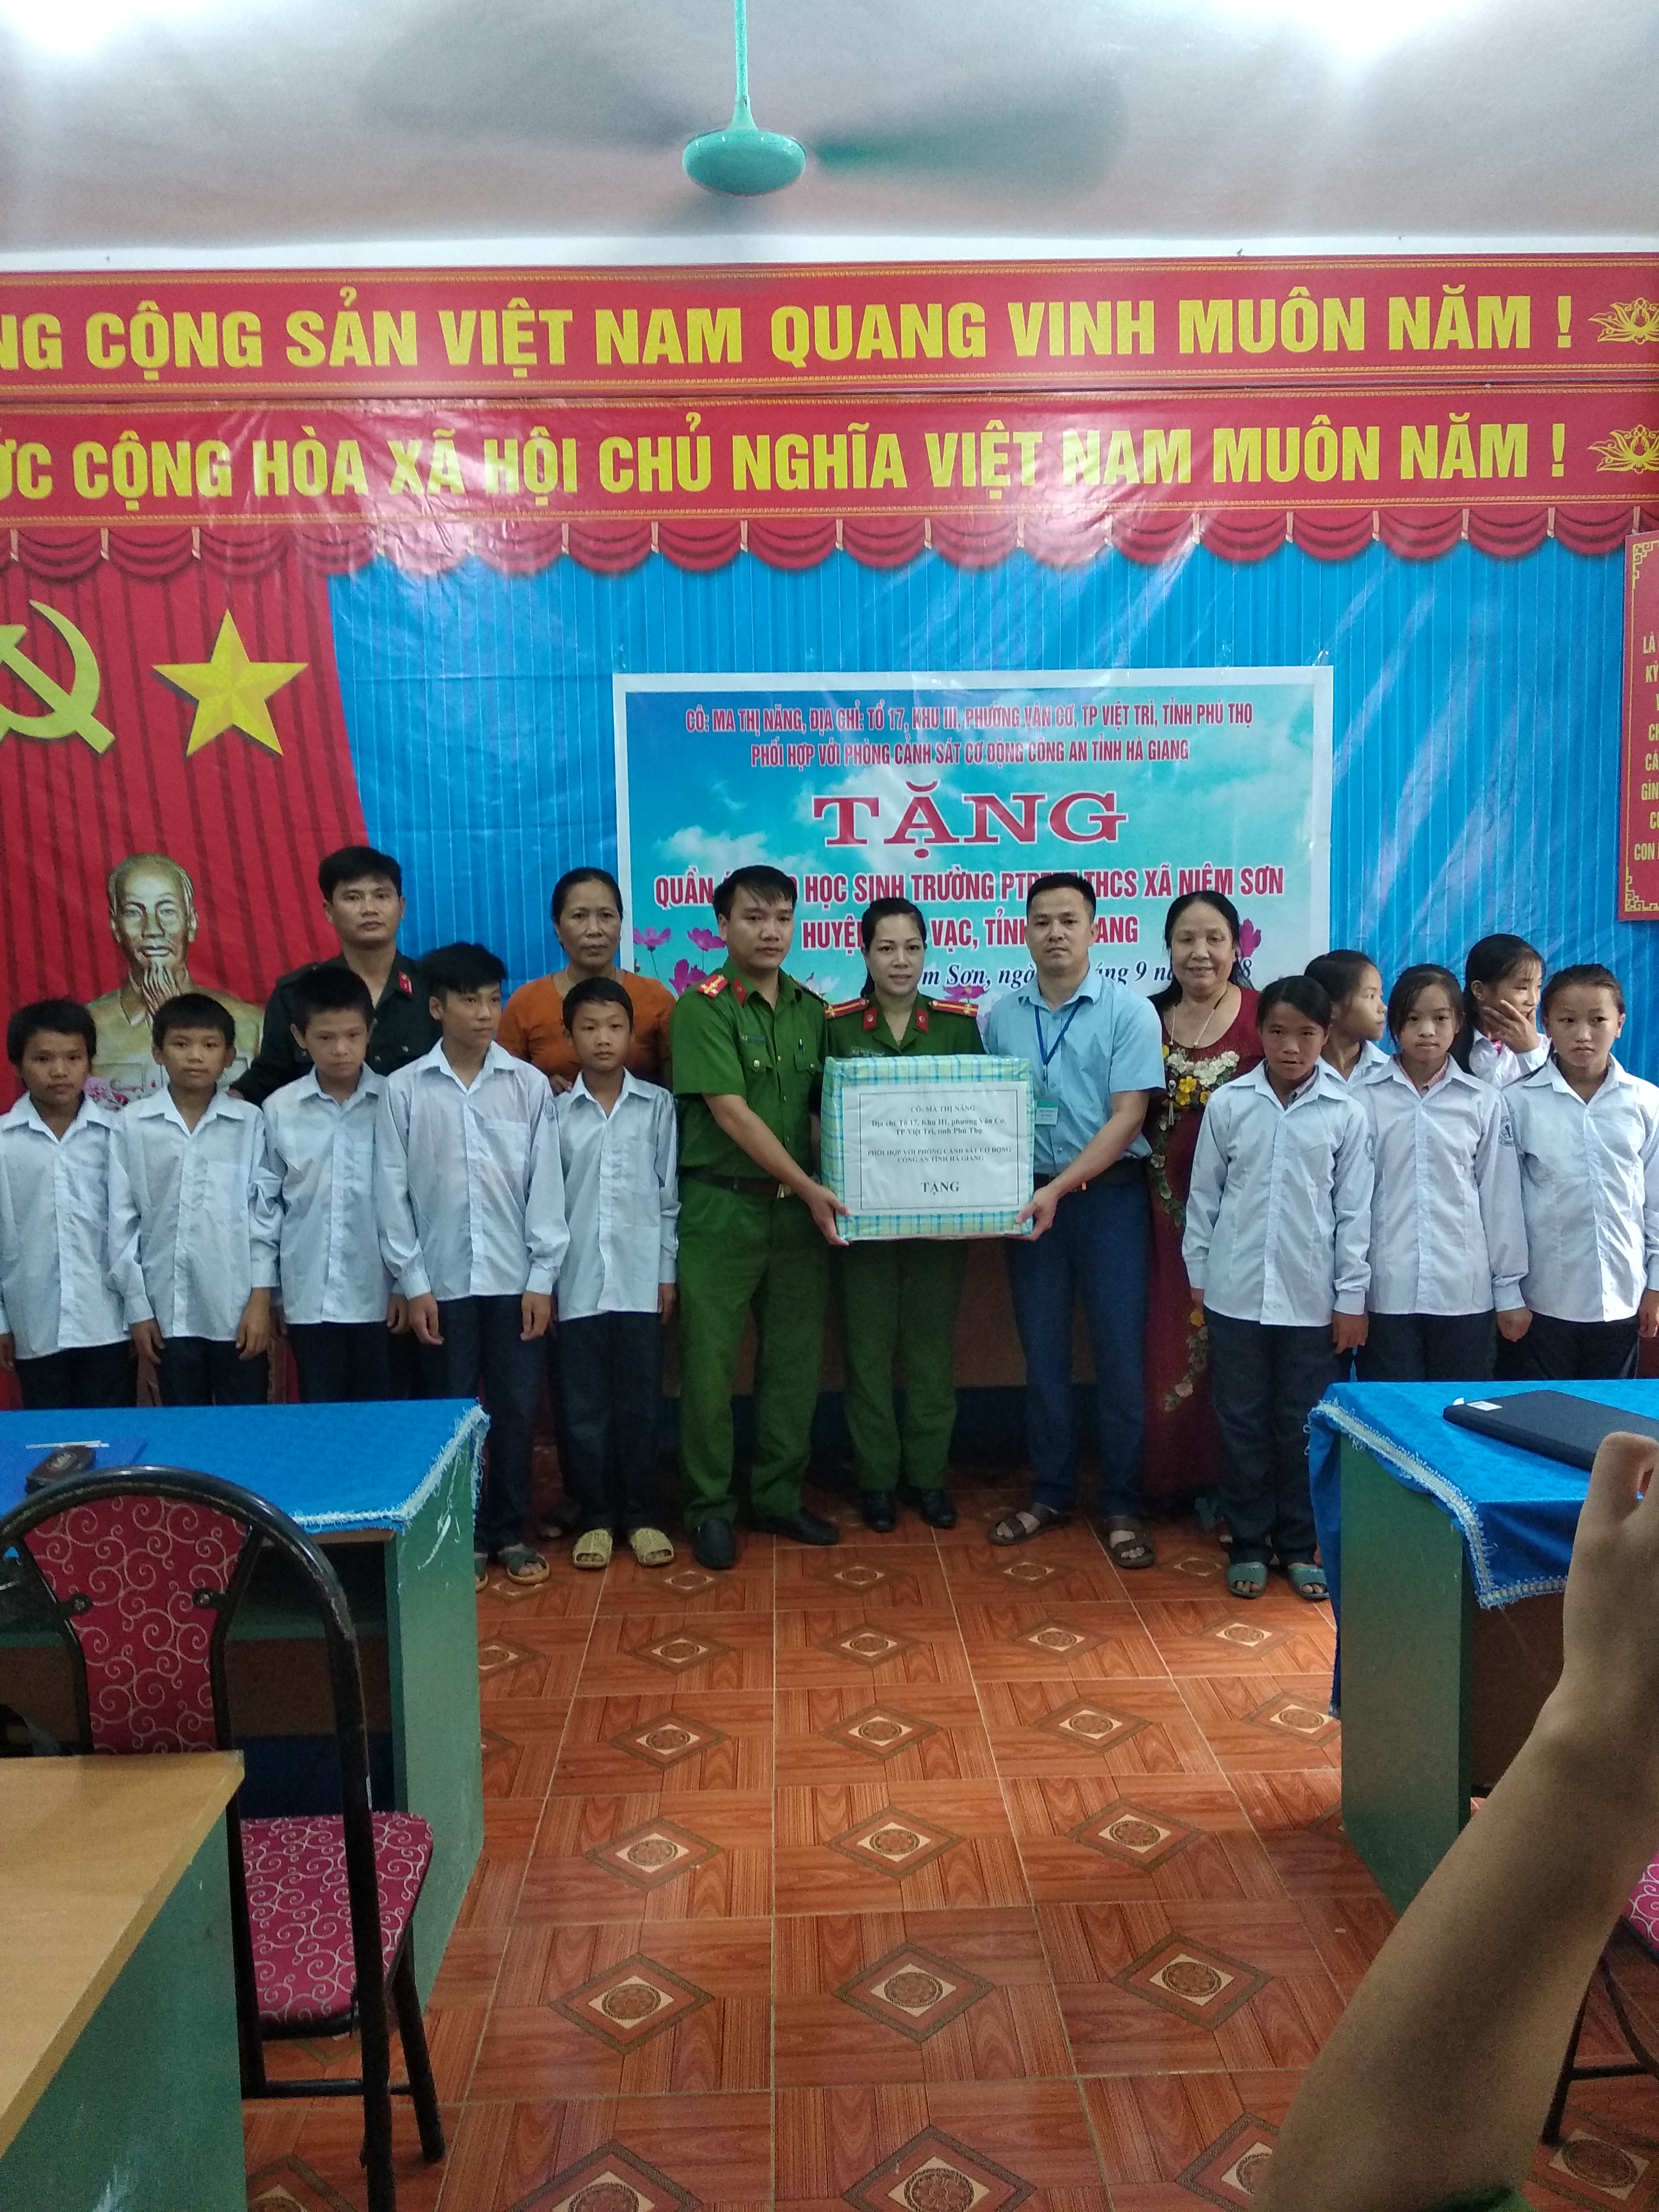 Tặng quần áo cho học sinh trường PTDTBT THCS xã Niêm Sơn